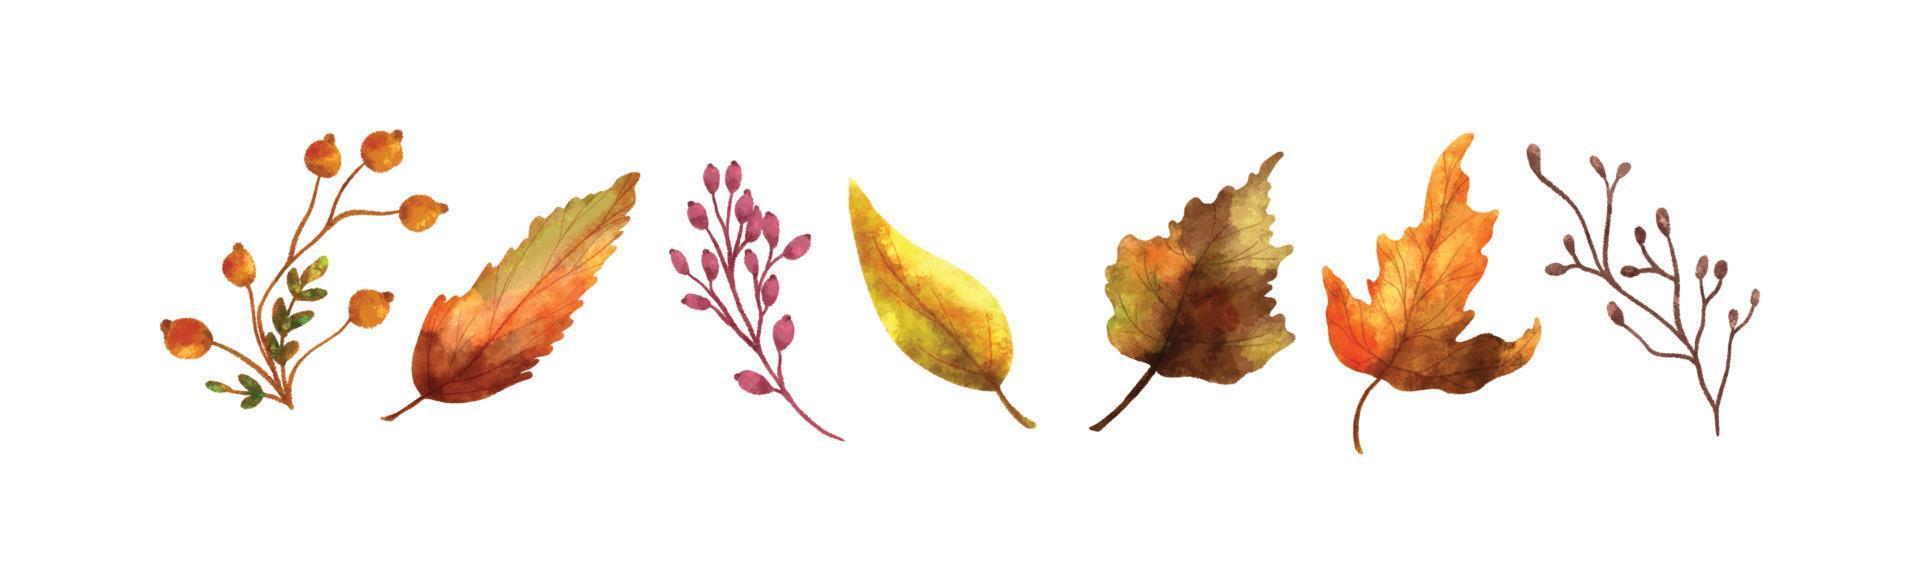 acquerello realistico autunno le foglie collezione 05 vettore